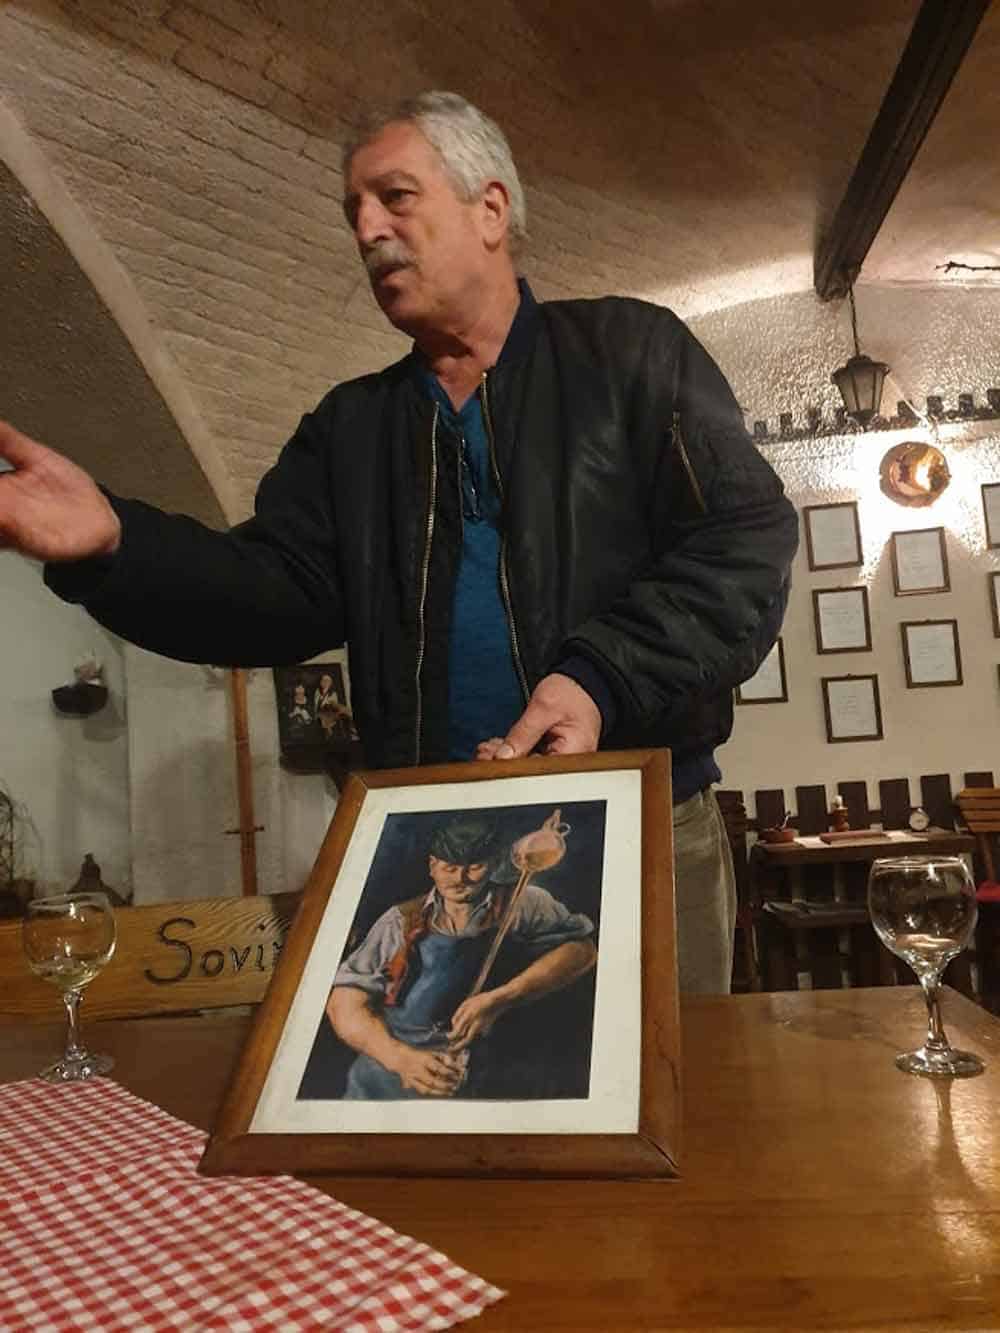 VEKOVNA TRADICIJA VINARSTVA: Nikola Cuculj u svom podrumu pokazuje kako su nekad morali da izgledaju radnici u vinarijama